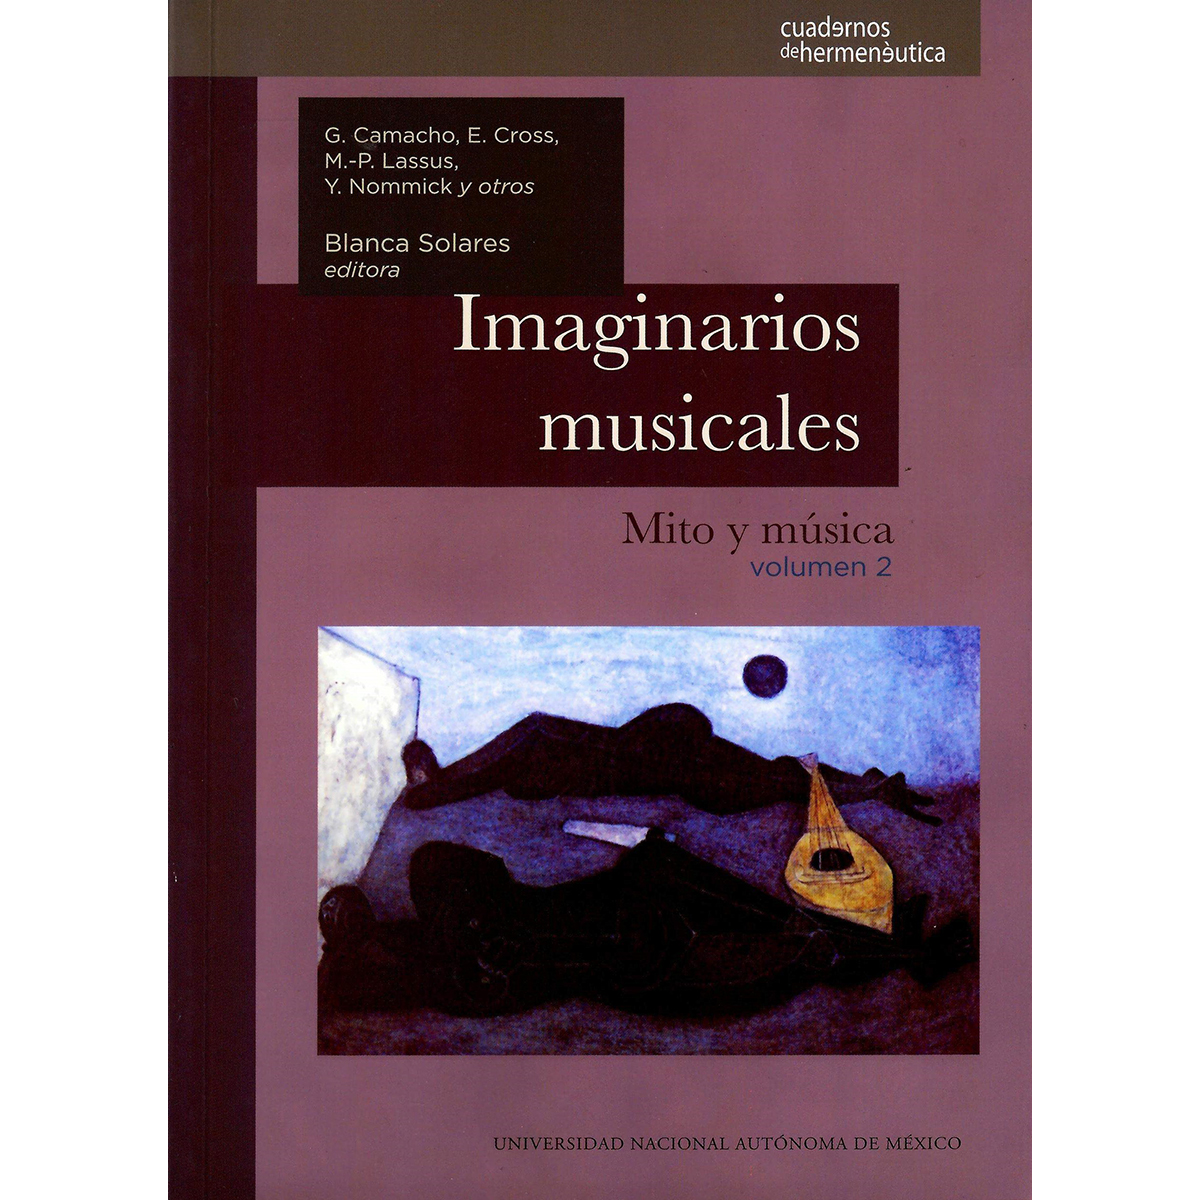 IMAGINARIOS MUSICALES: MITO Y MÚSICA. VOLUMEN 2 